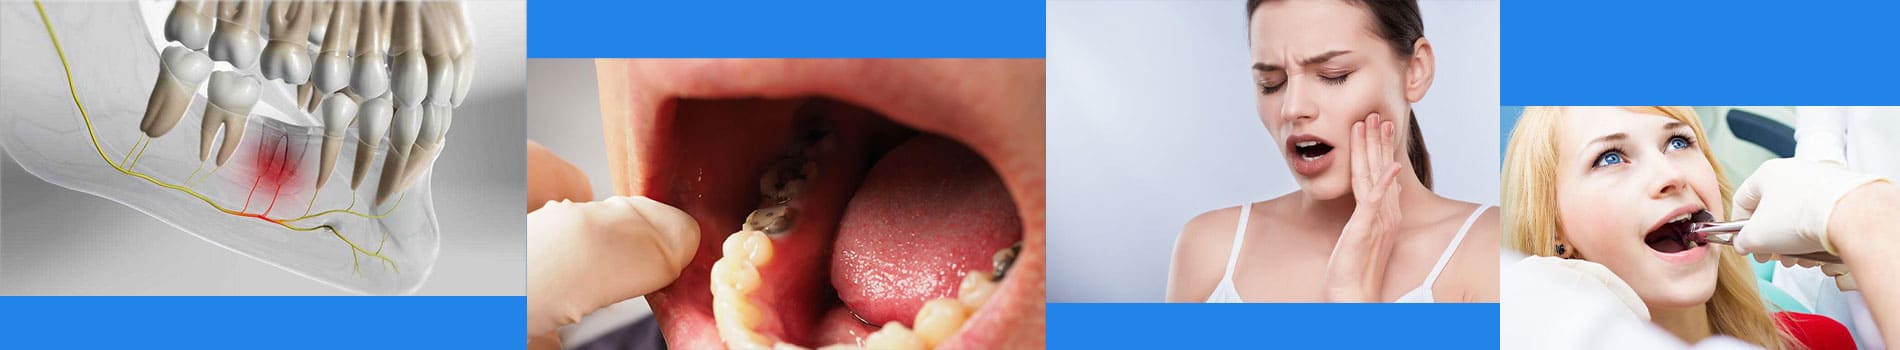 حفره خشک دندان چیست؟